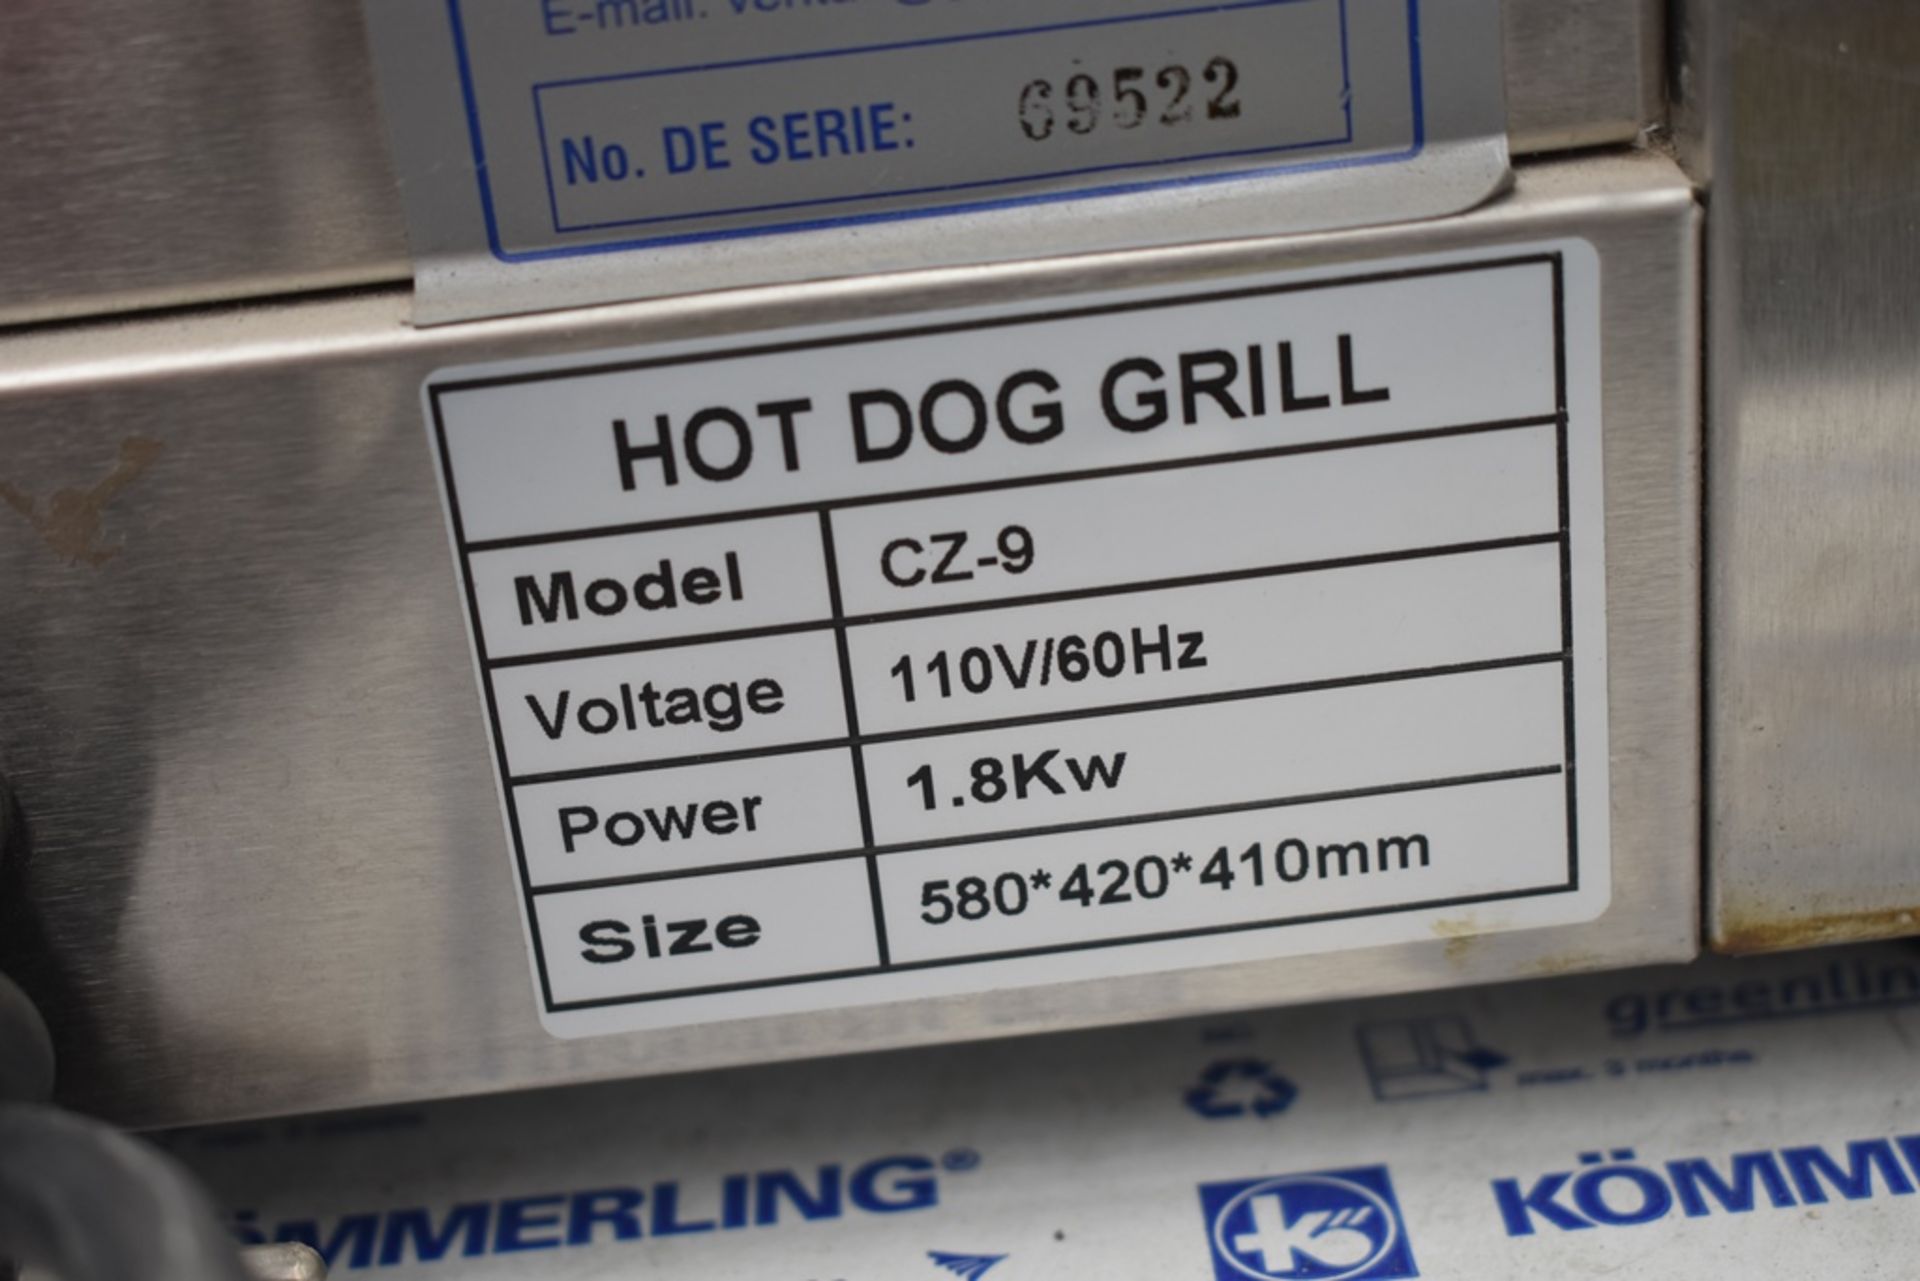 NUEVOS Roller Para Salchicha De Hot Dog eléctrico (Hot Dog Grill) Marca Kreppsland, Modelo Cz-9,110v - Image 18 of 27